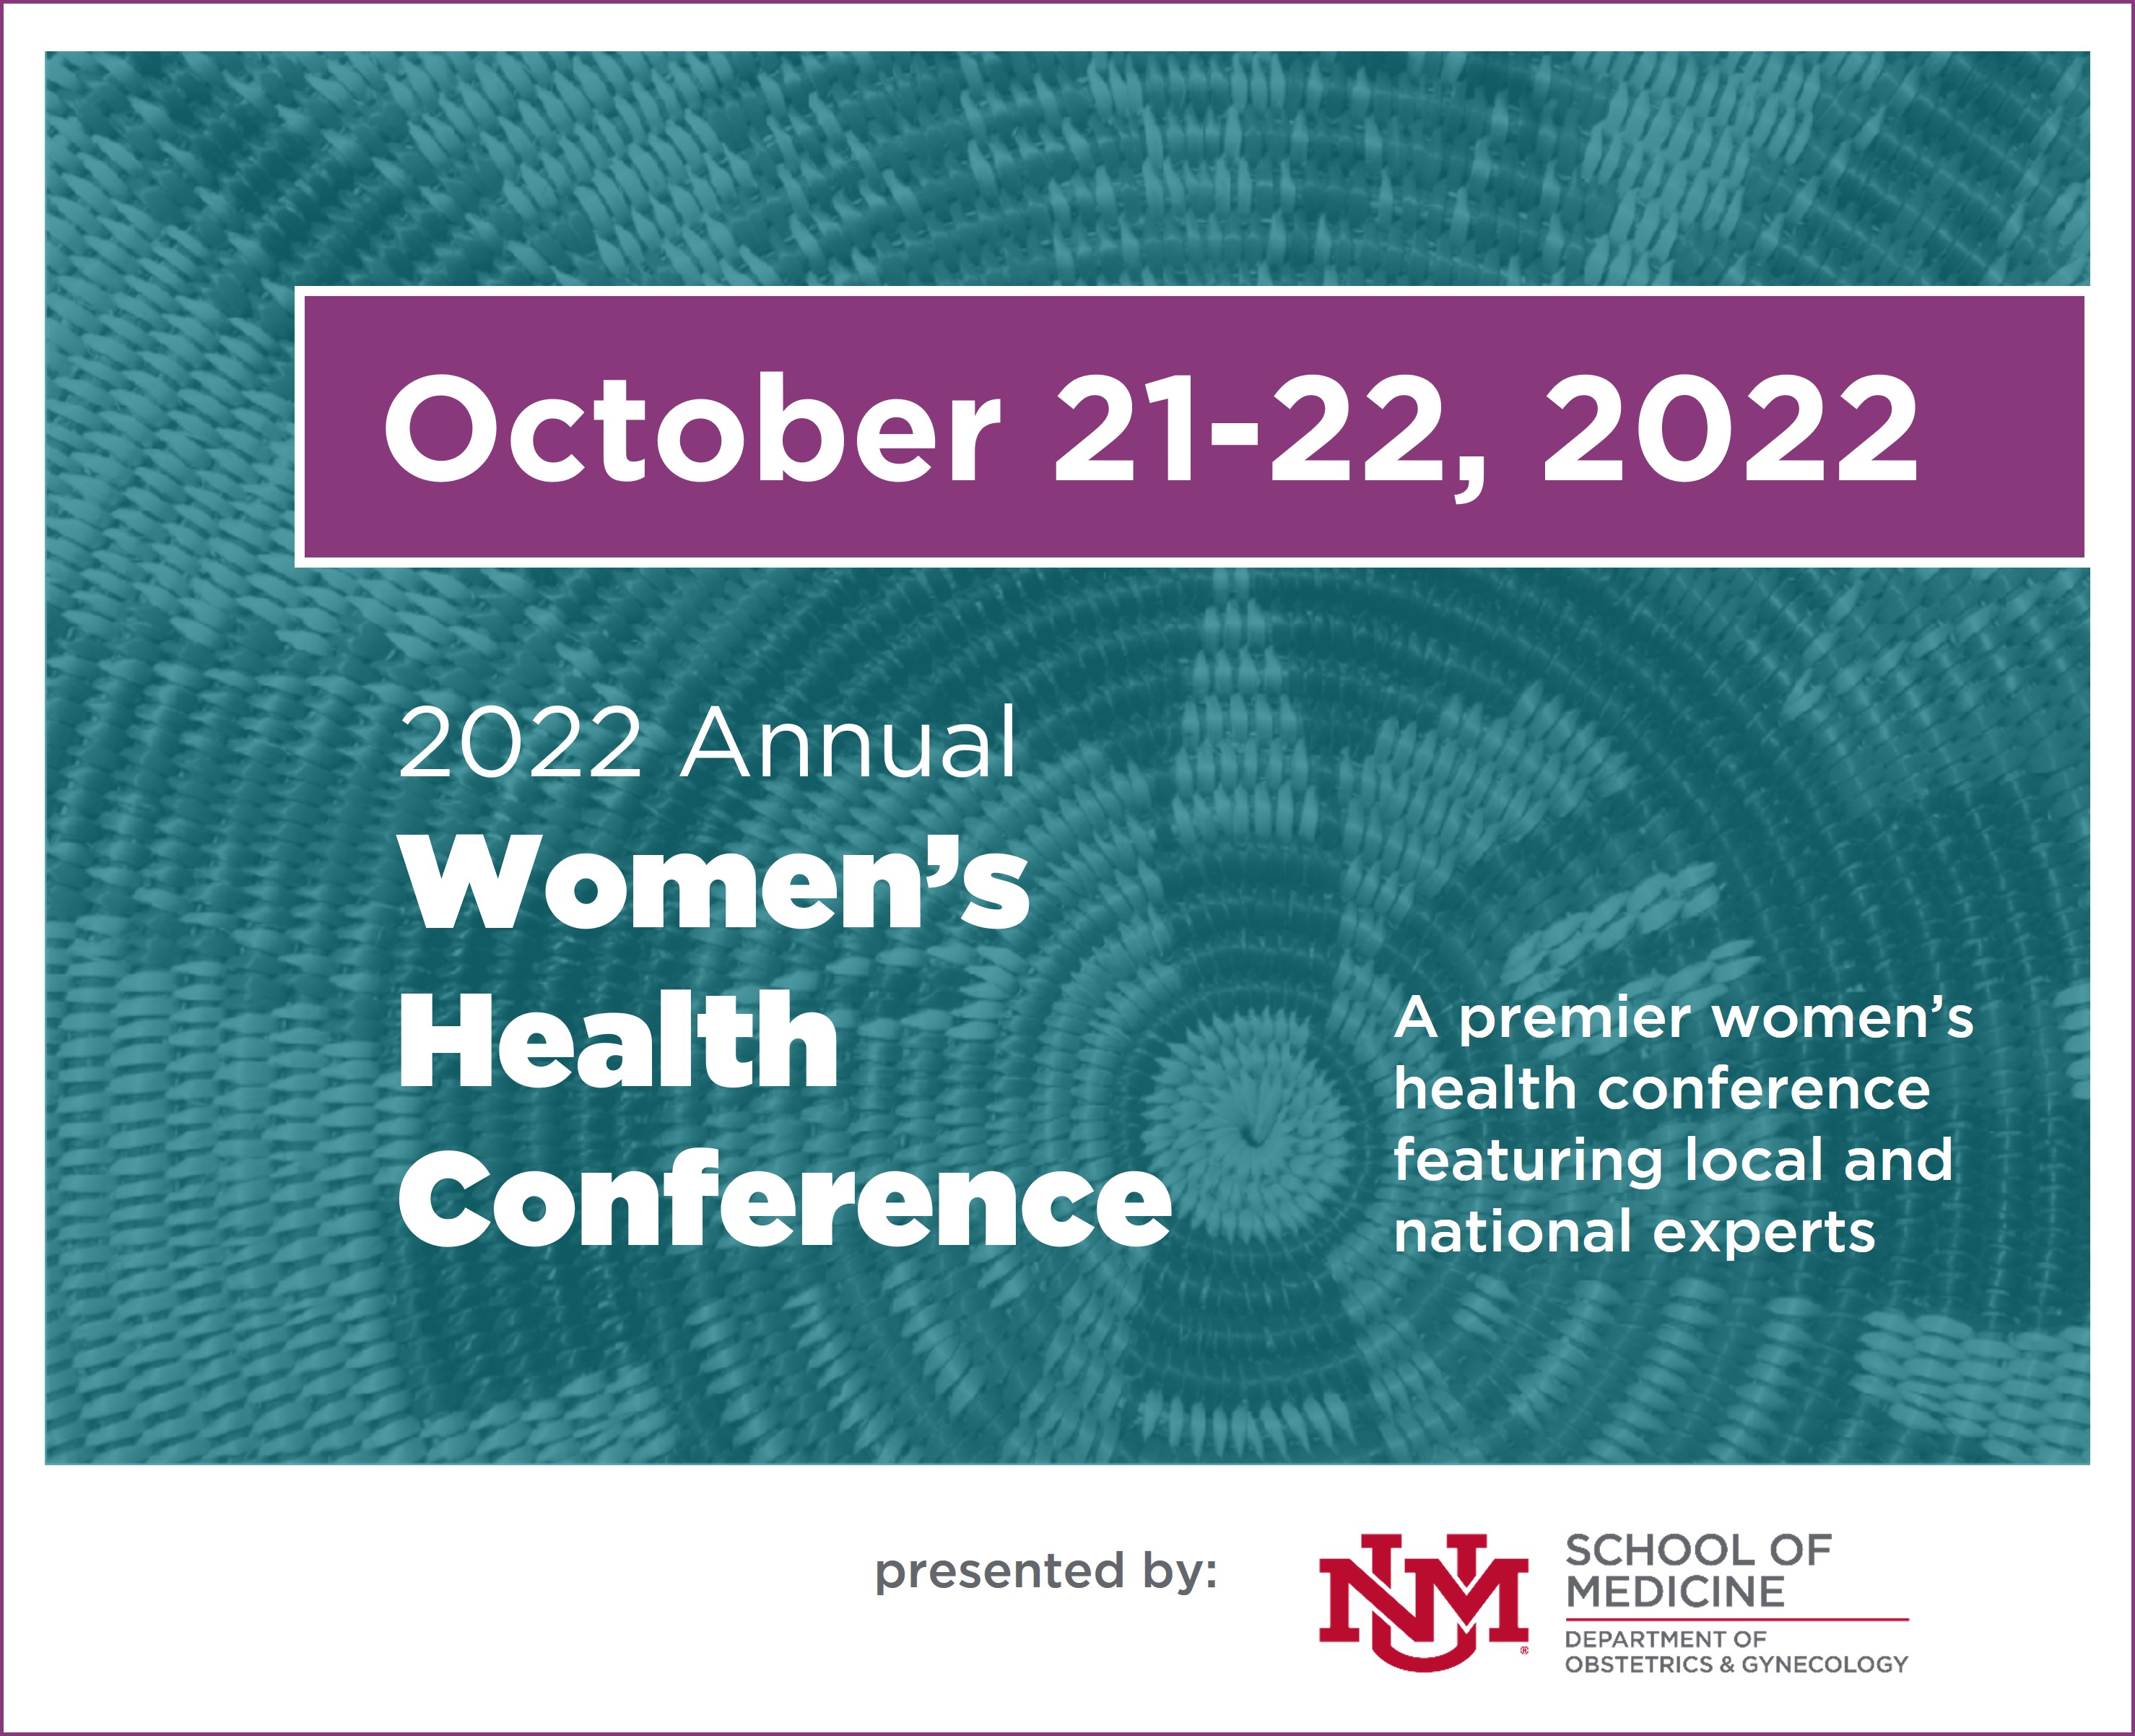 Hội nghị sức khỏe phụ nữ